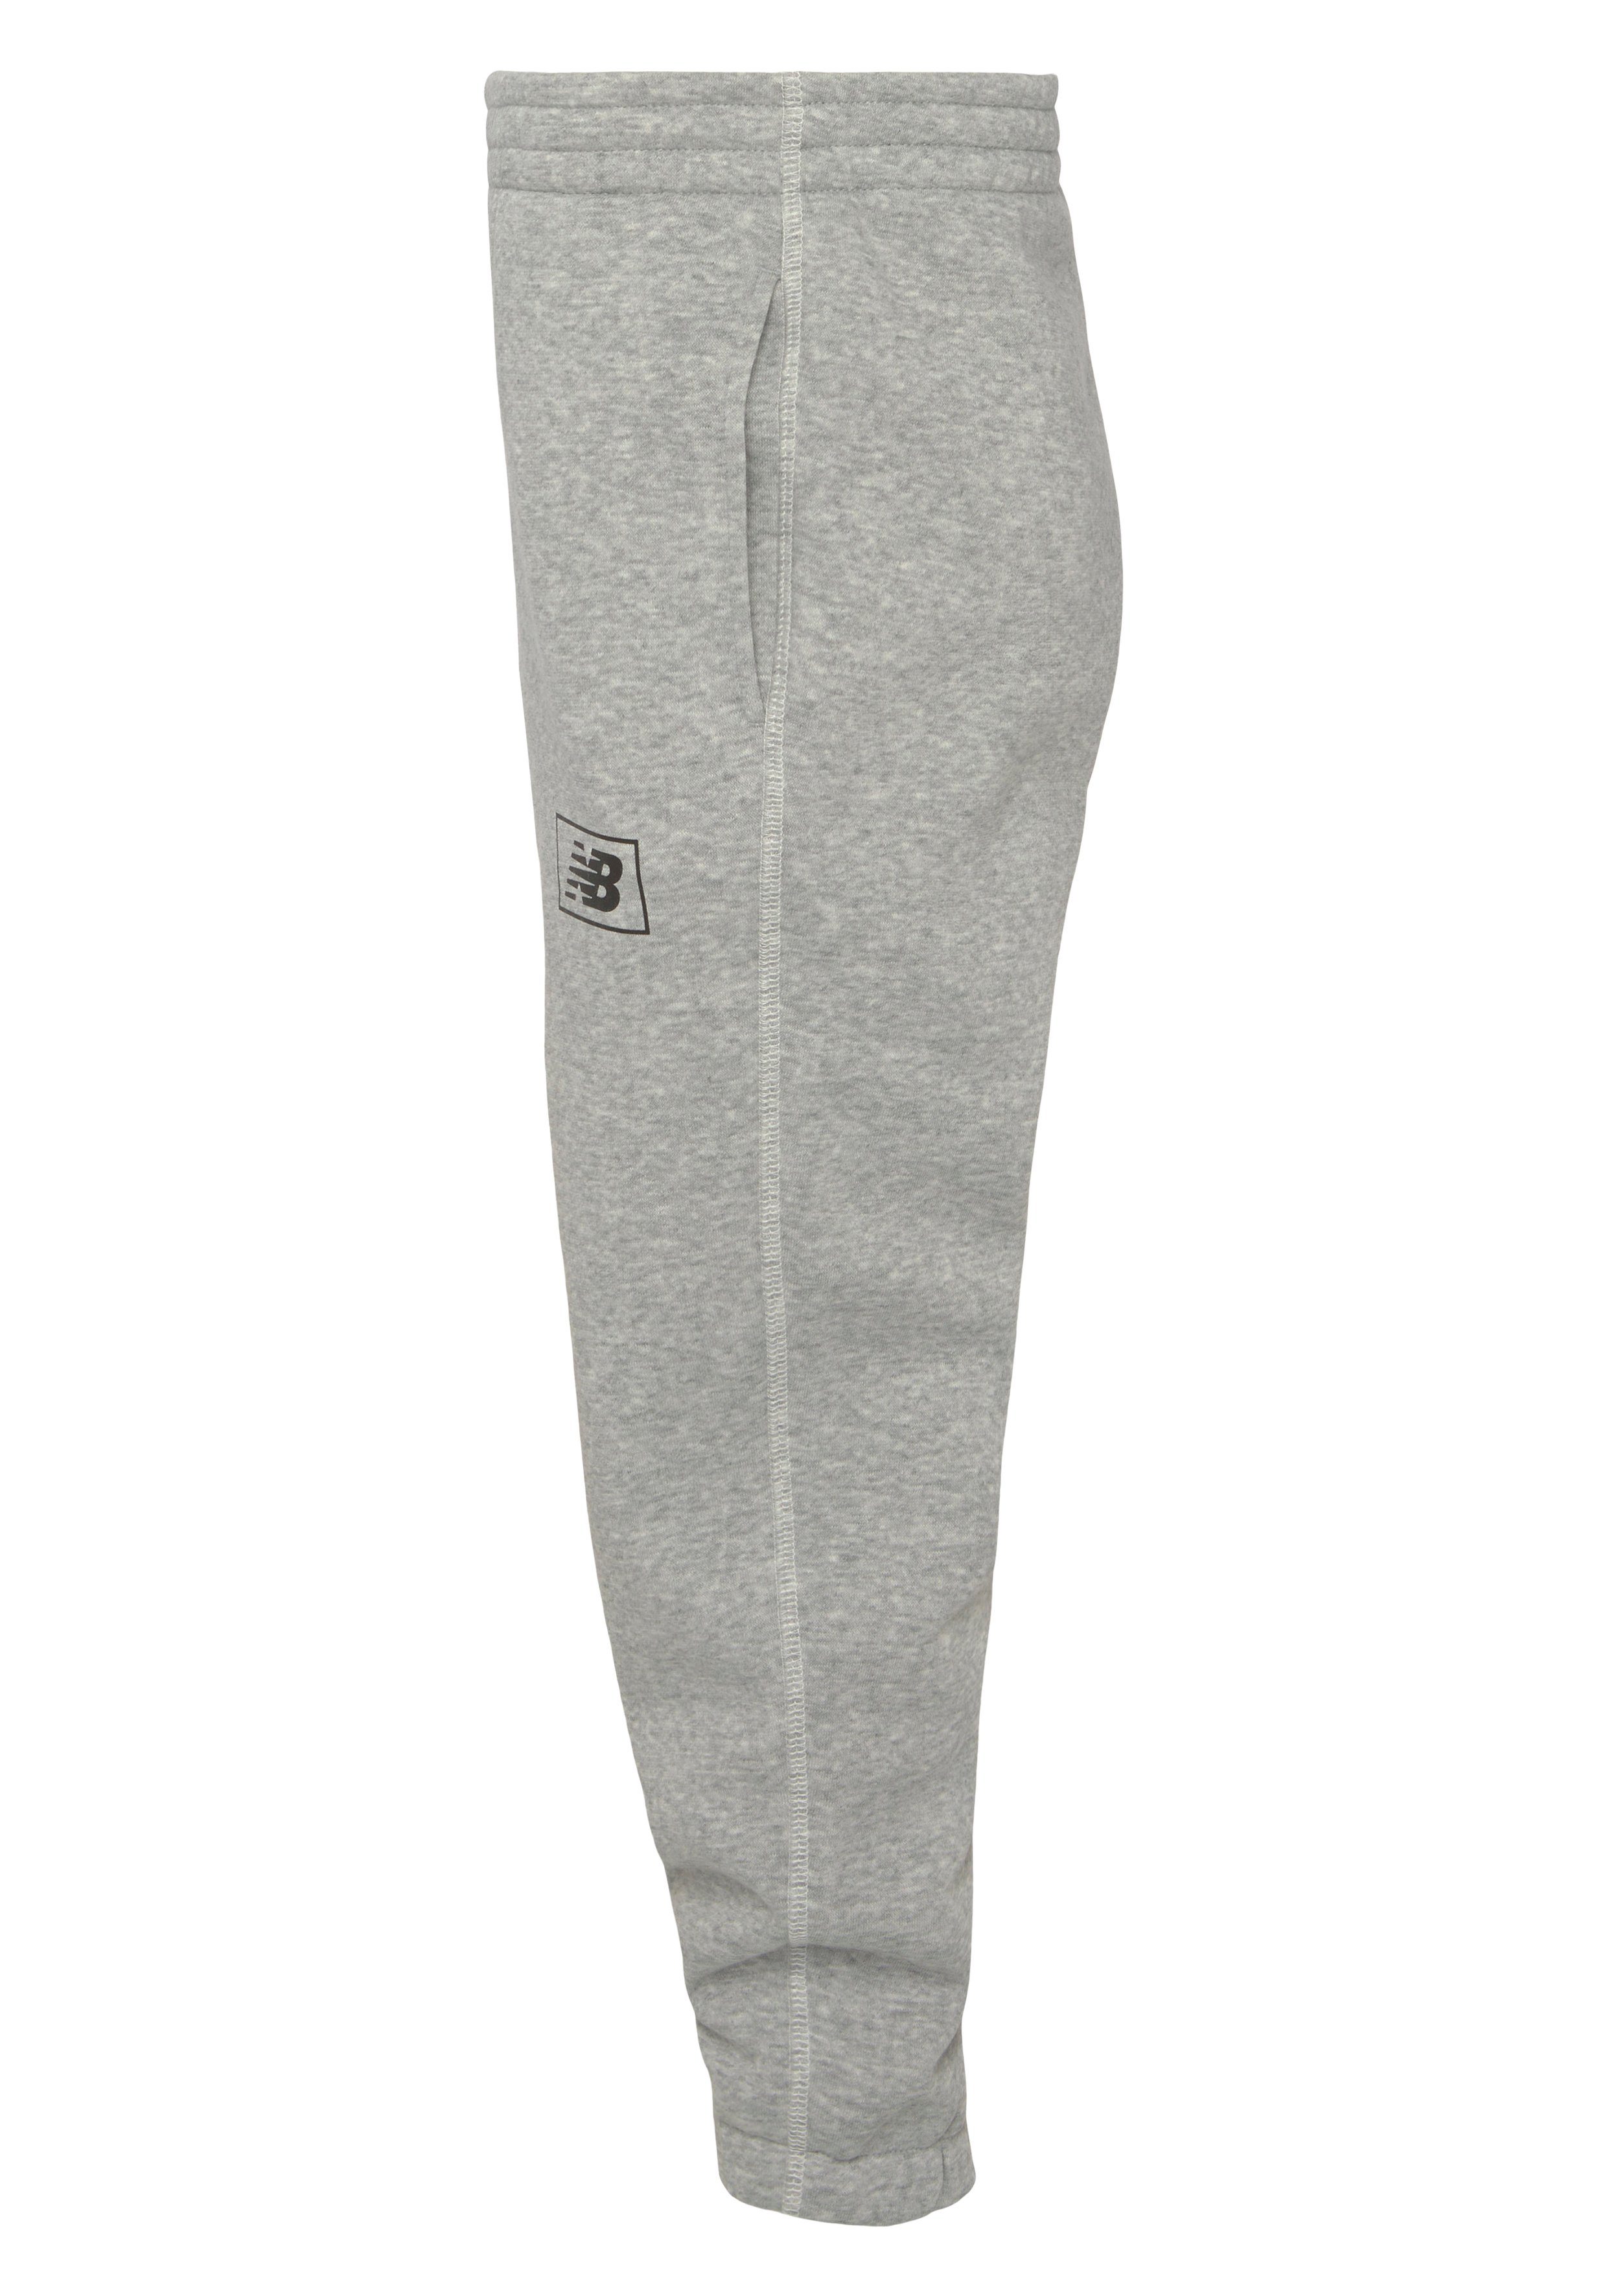 New Balance grey Essentials athletic Pant Sweathose Back Brushed